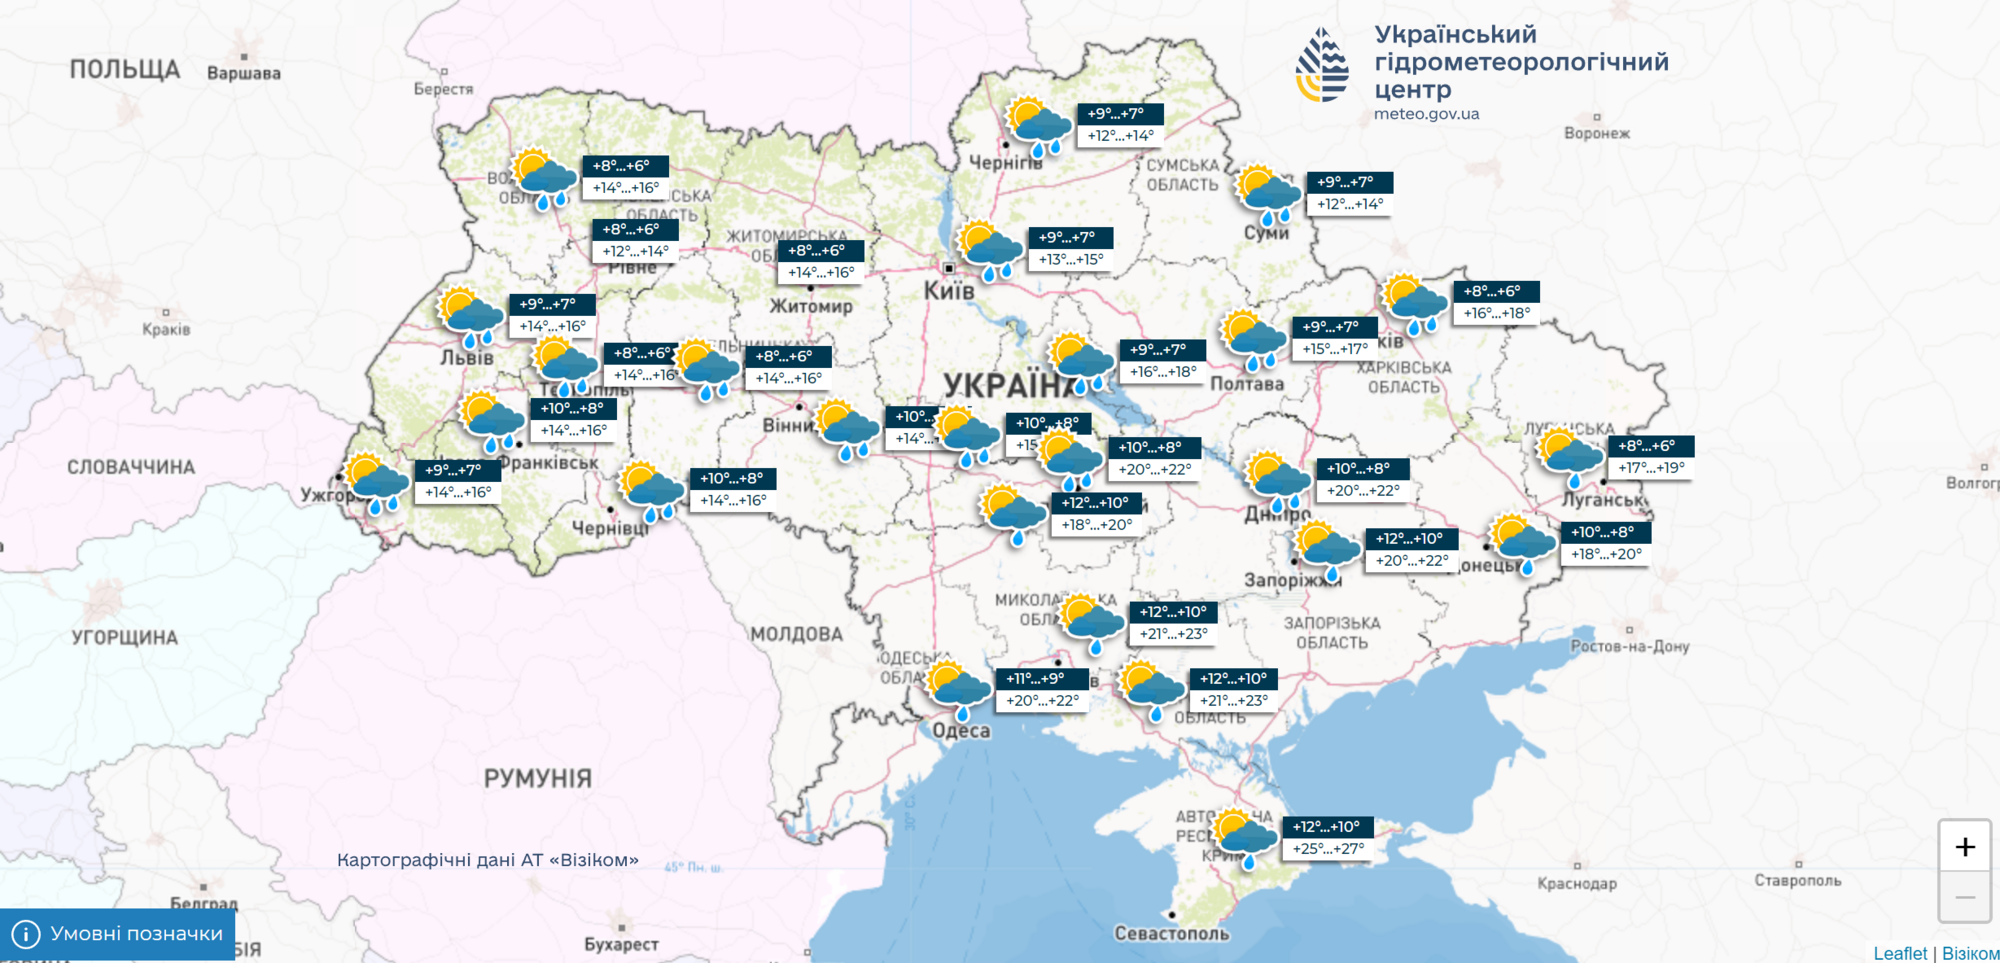 Дожди и сильный ветер: синоптик предупредила об ухудшении погоды в Украине